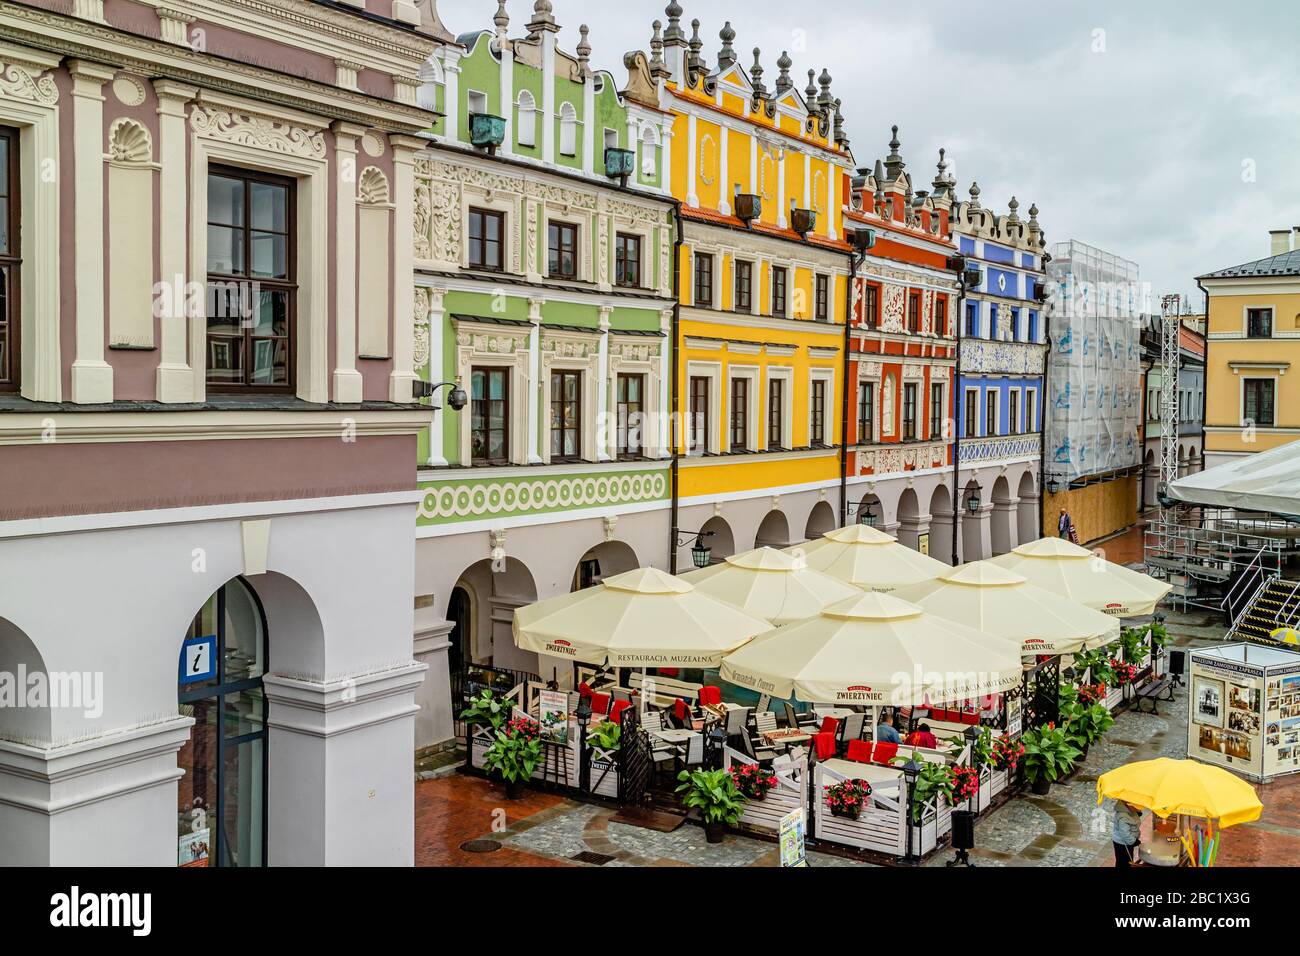 Farbenfrohe Gebäude umgeben den zentralen Marktplatz Rynek Wielki, der zum UNESCO-Weltkulturerbe gehört, im polnischen Zamość. Juli 2017. Stockfoto